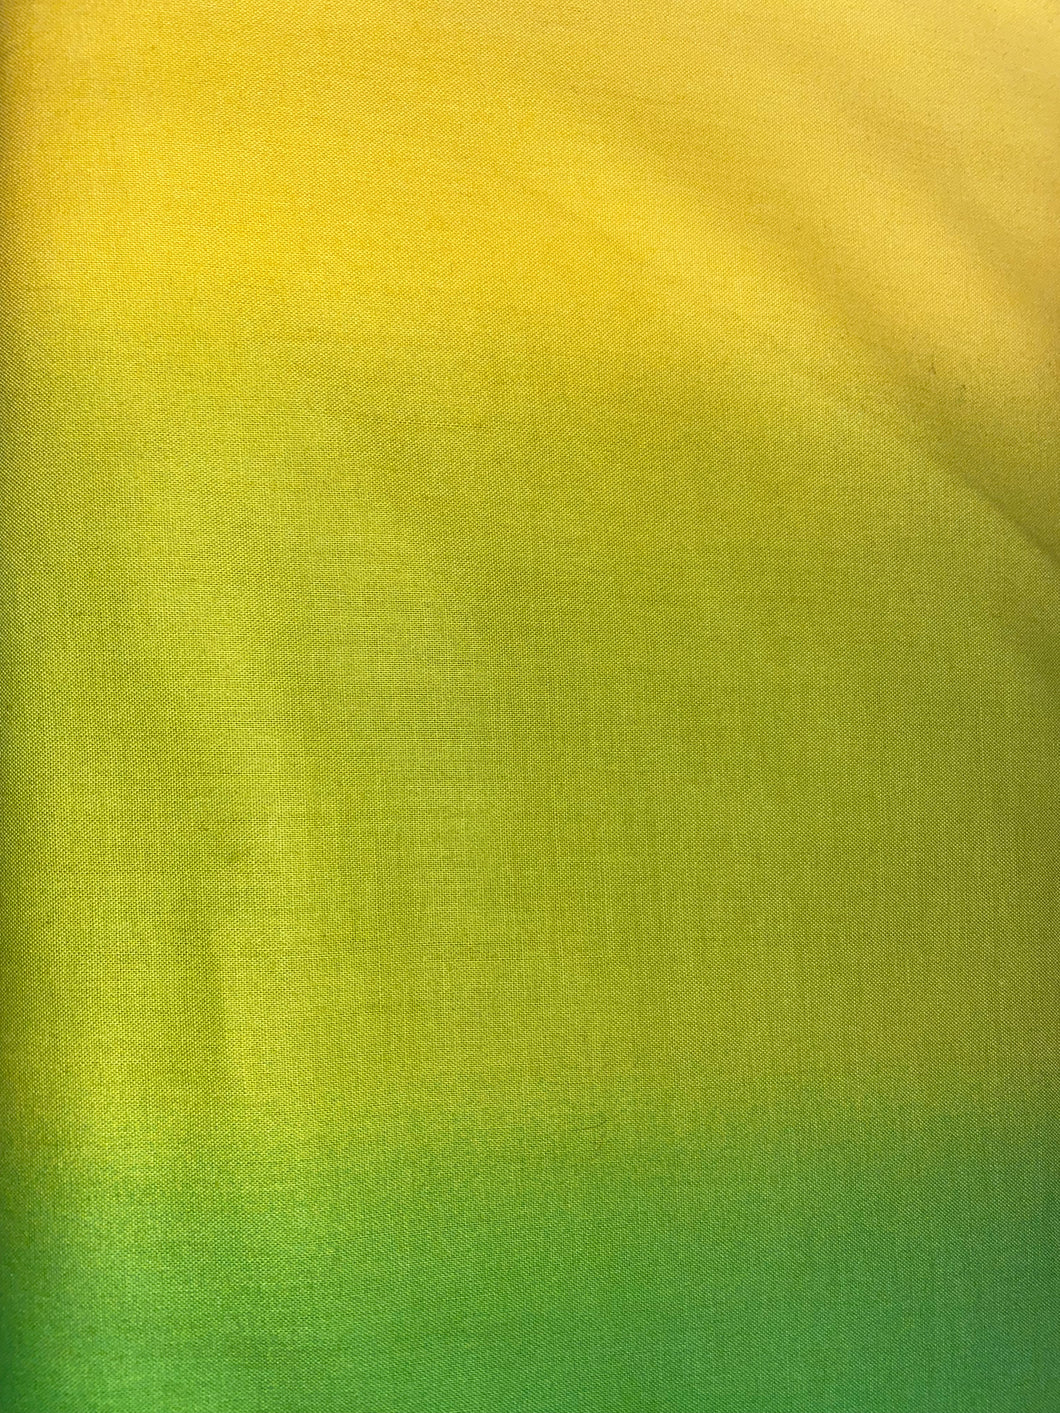 Shades - Yellow/Green